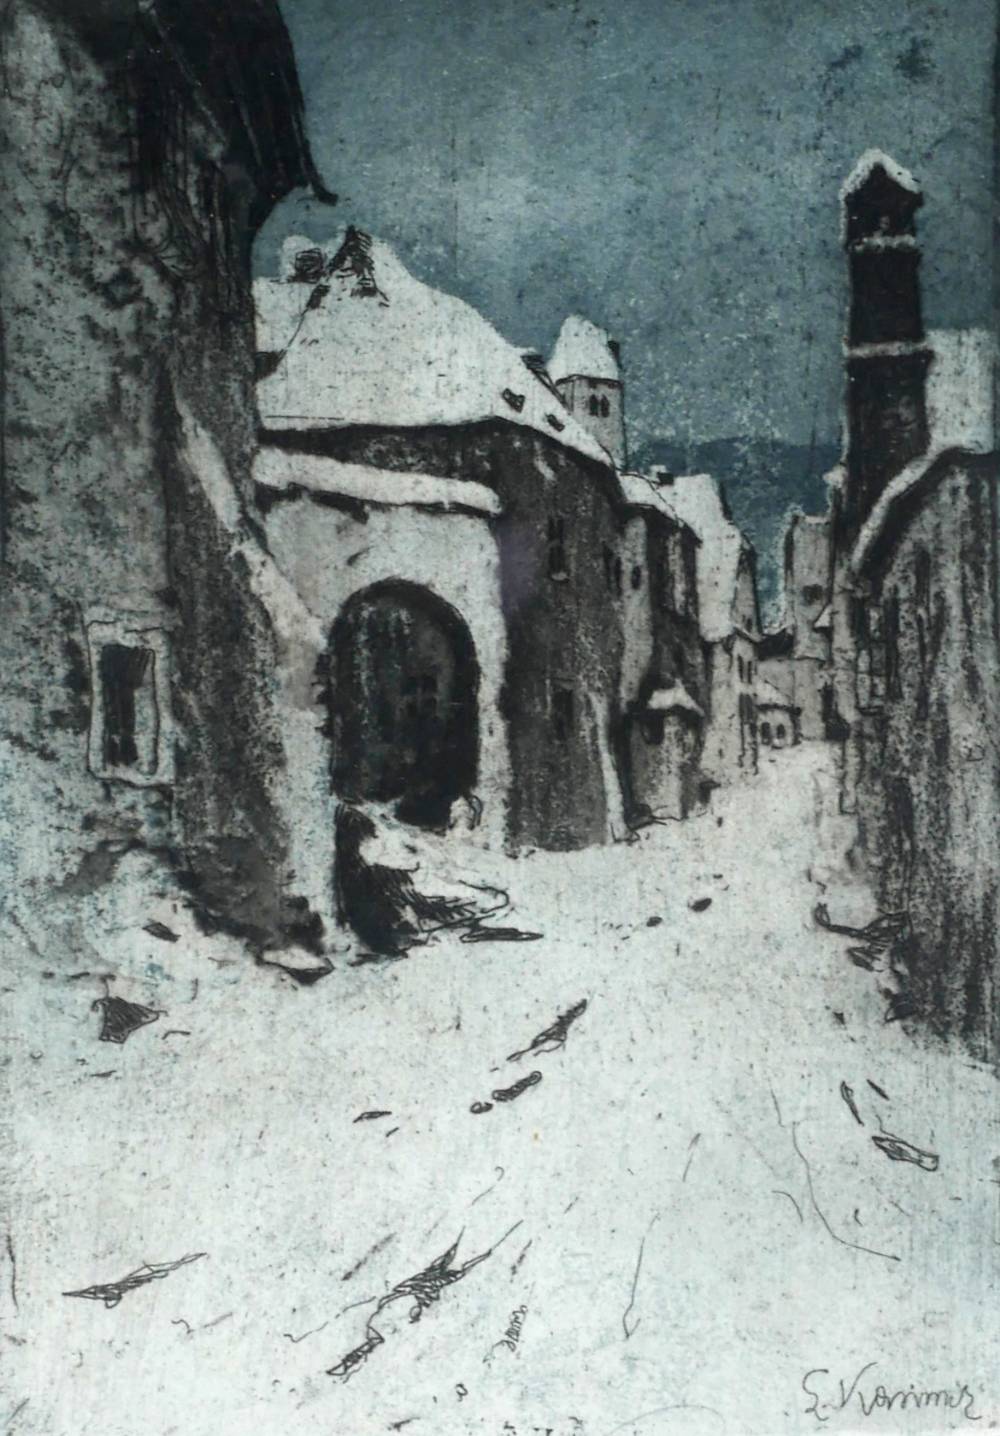 WINTER IN D躌NSTEIN, AUSTRIA by Luigi Kasimir (Austro-Hungarian, 1881�62) (Austro-Hungarian, 1881�62) at Whyte's Auctions